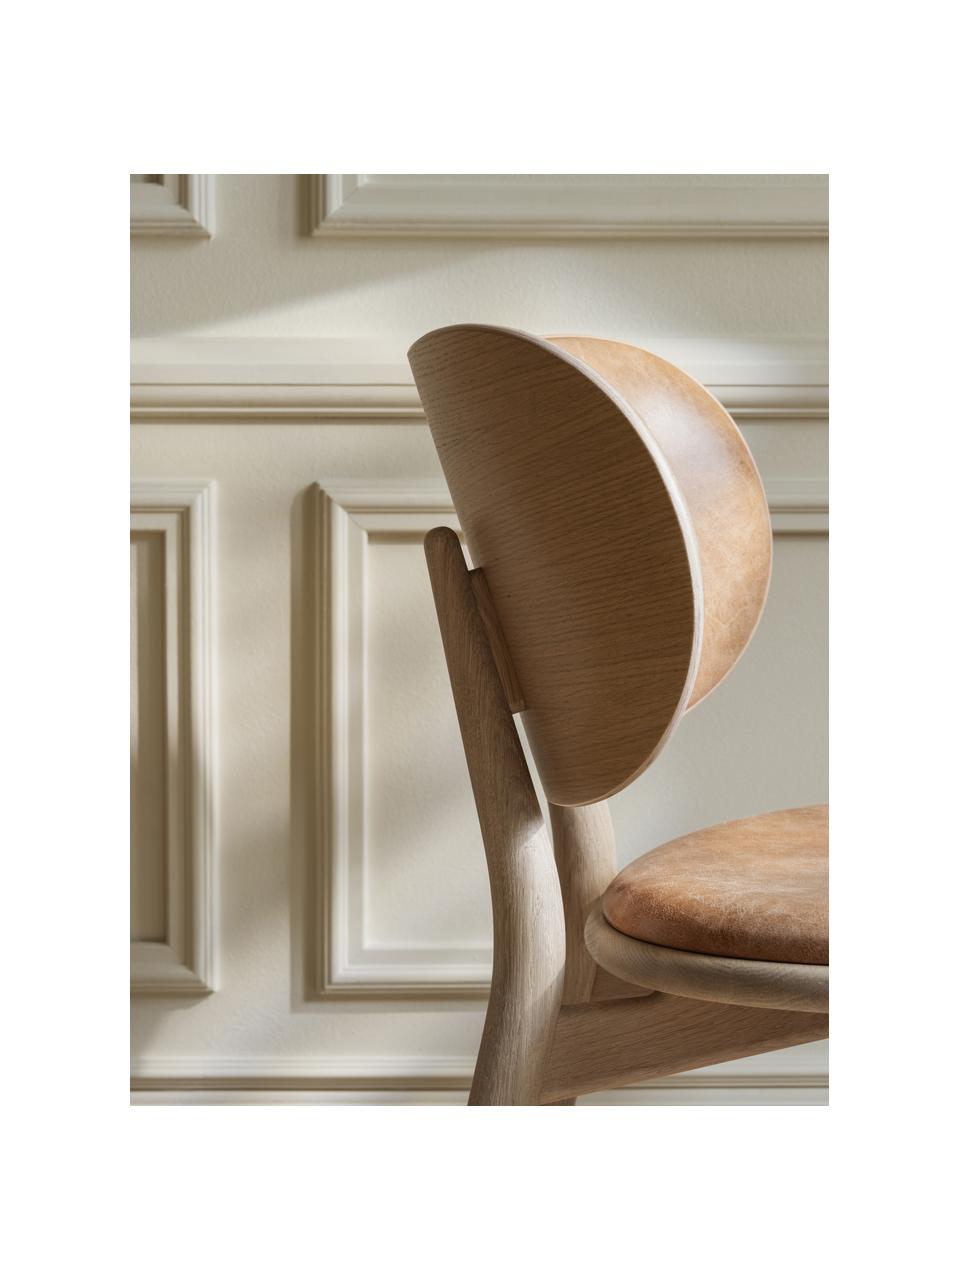 Kožená stolička s drevenými nohami Rock, Koža béžová, dubové drevo svetlé, Š 52 x H 44 cm